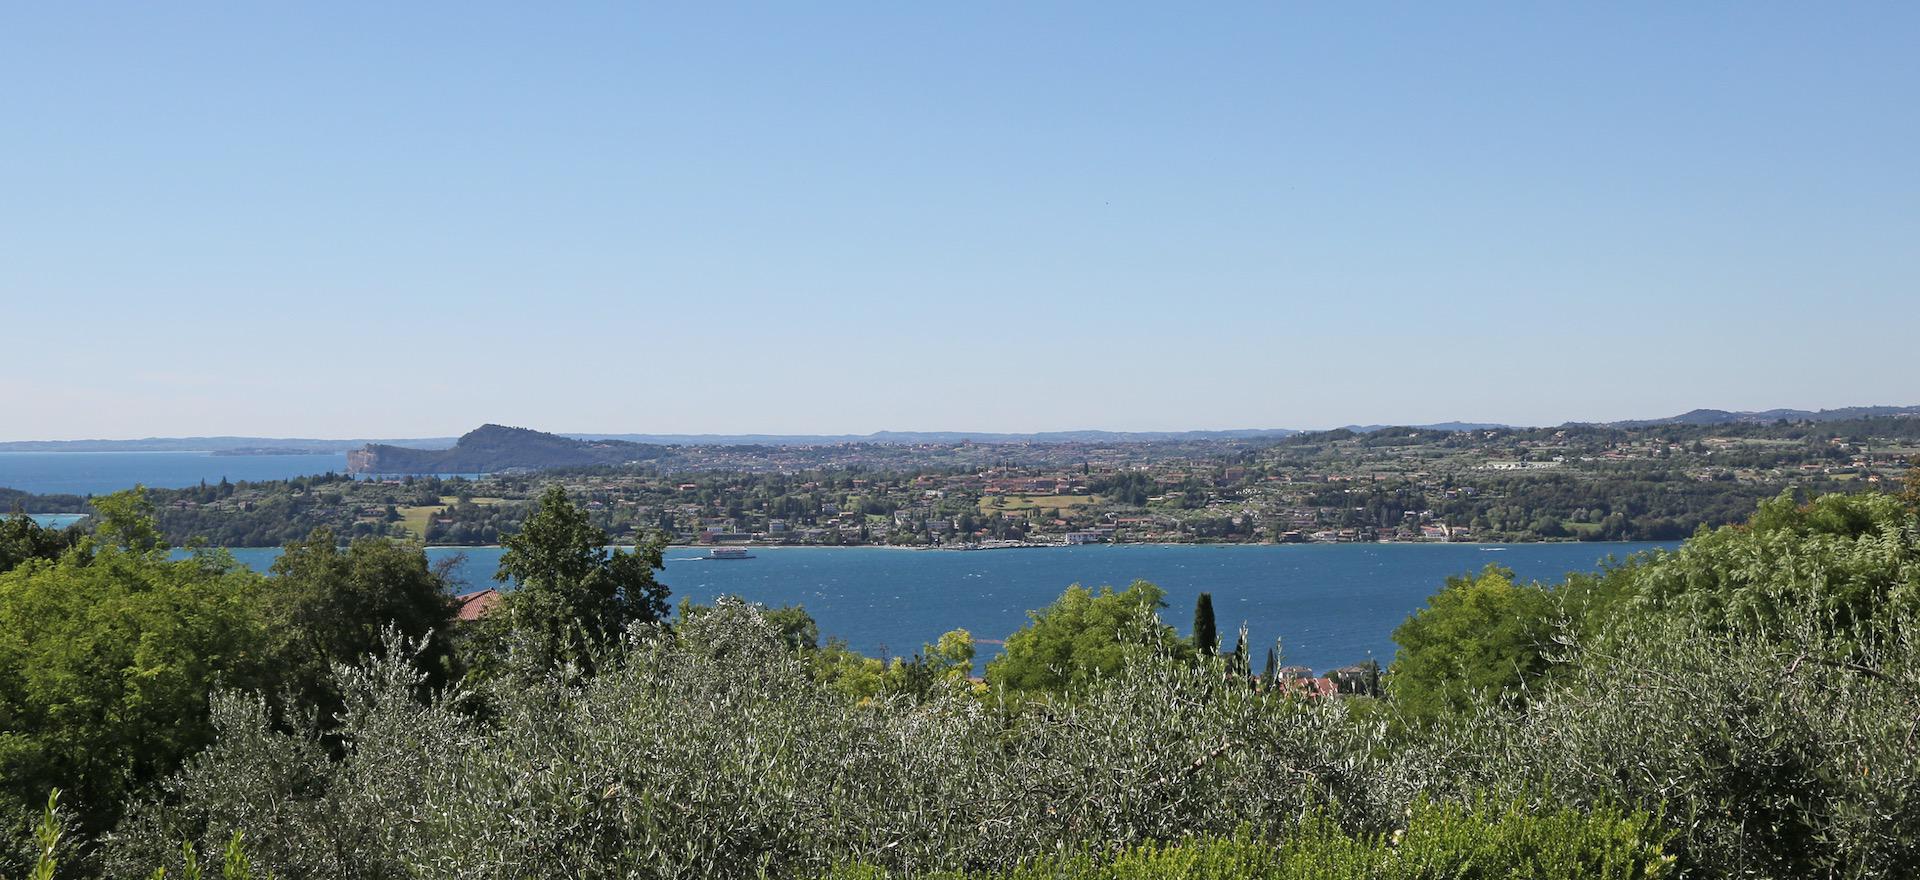 Agriturismo Lake Como and Lake Garda Agriturismo overlooking Lake Garda and stylish interior